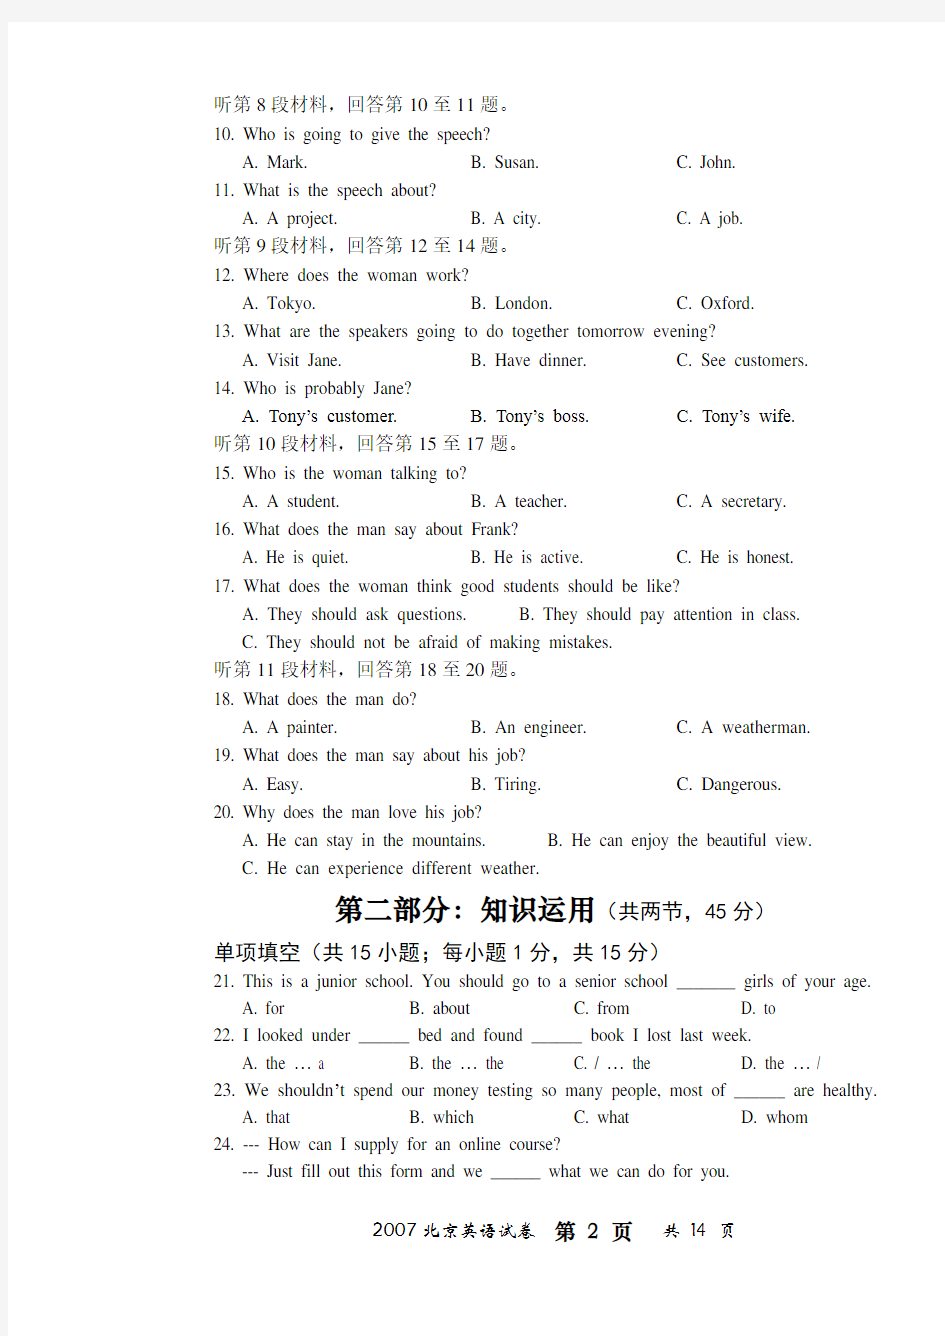 2007年高考英语试题及参考答案(北京卷)